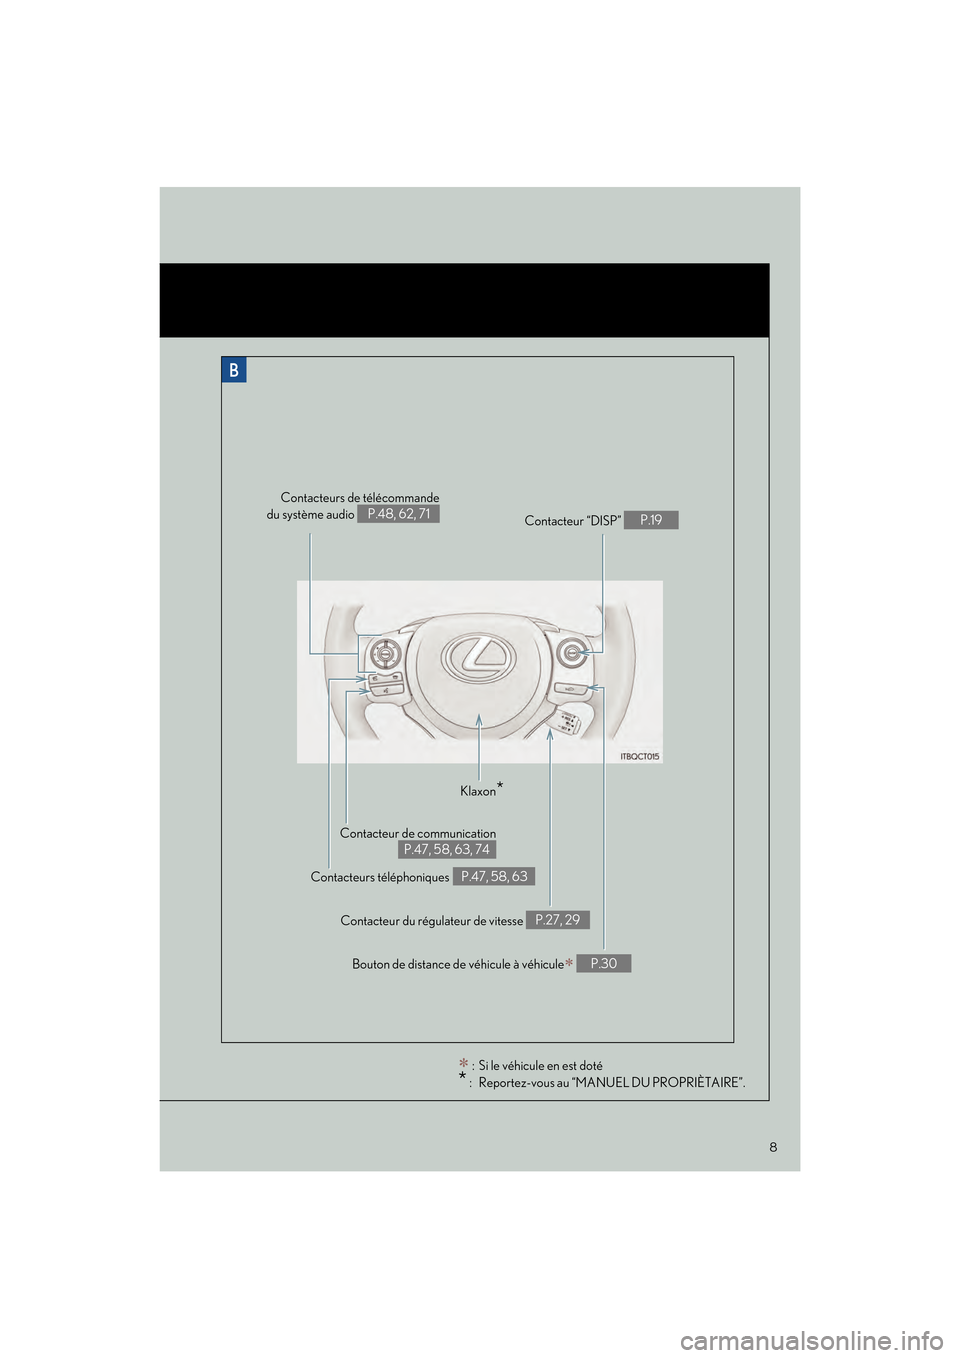 Lexus CT200h 2017  Guide rapide du manuel du propriétaire (in French) 8
CT200h_QG_OM76225D_(D)
Contacteur de communication
P.47, 58, 63, 74
Contacteurs de télécommande
du système audio 
P.48, 62, 71
Contacteurs téléphoniques
 P.47, 58, 63 Contacteur “DISP” 
P.1